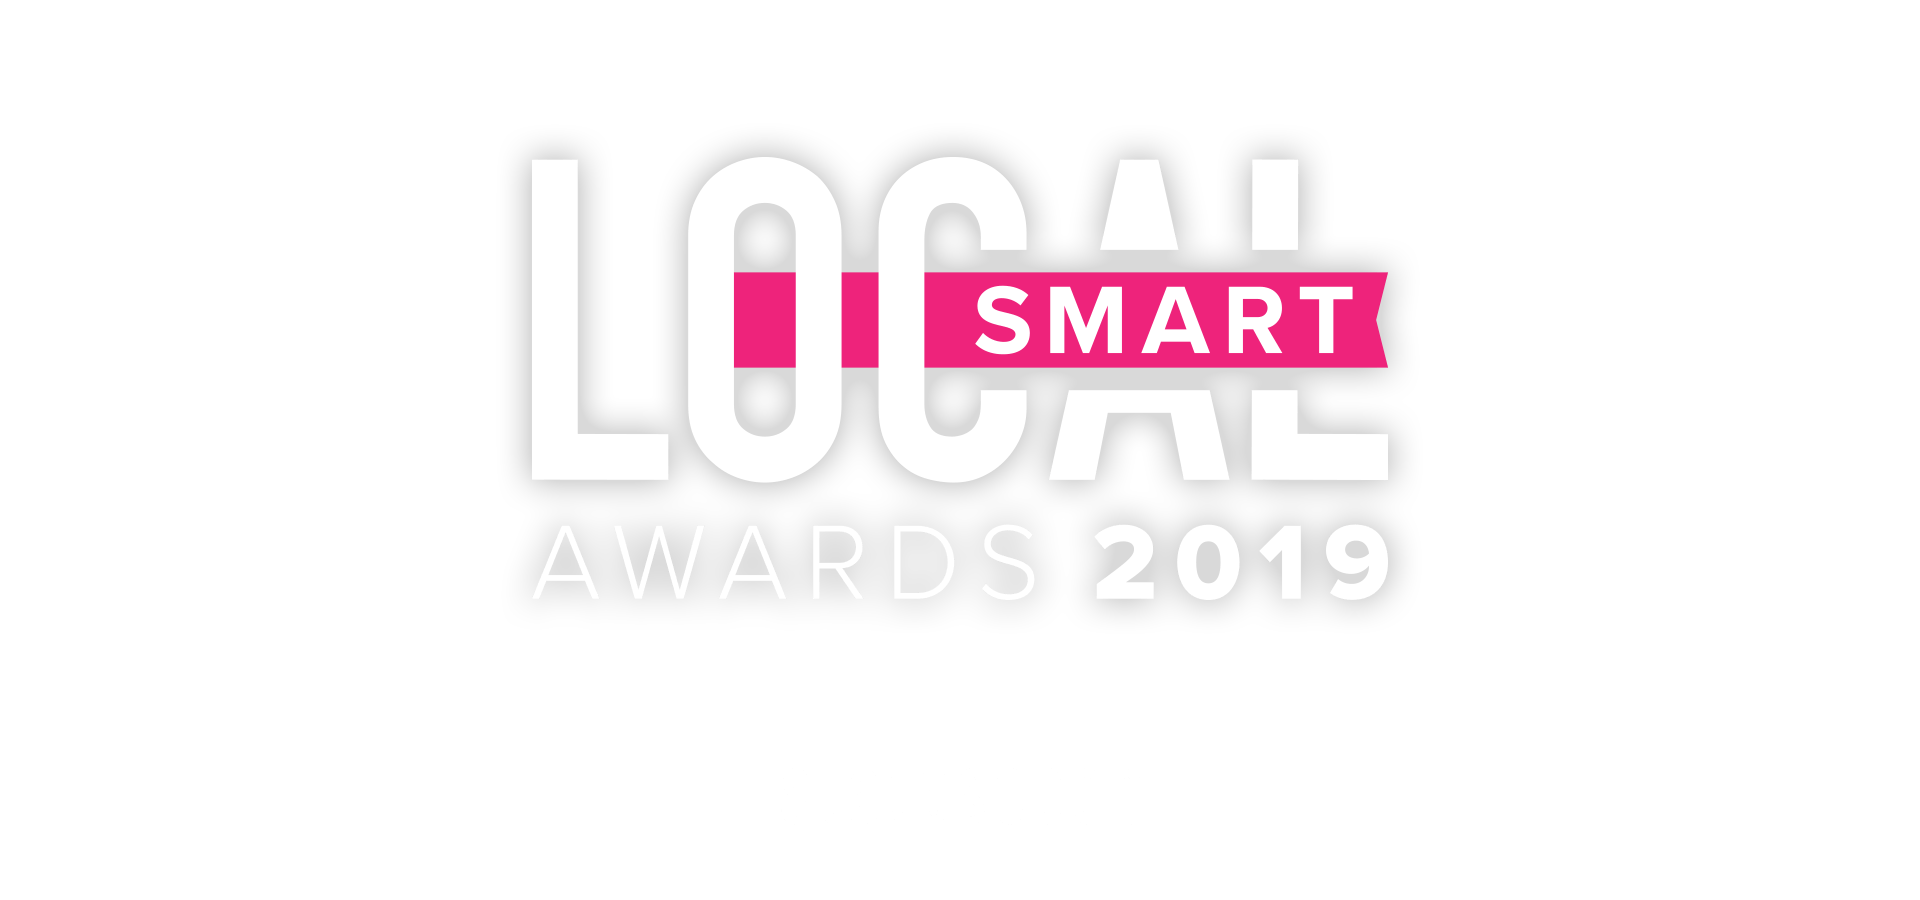 LocalSmart Awards